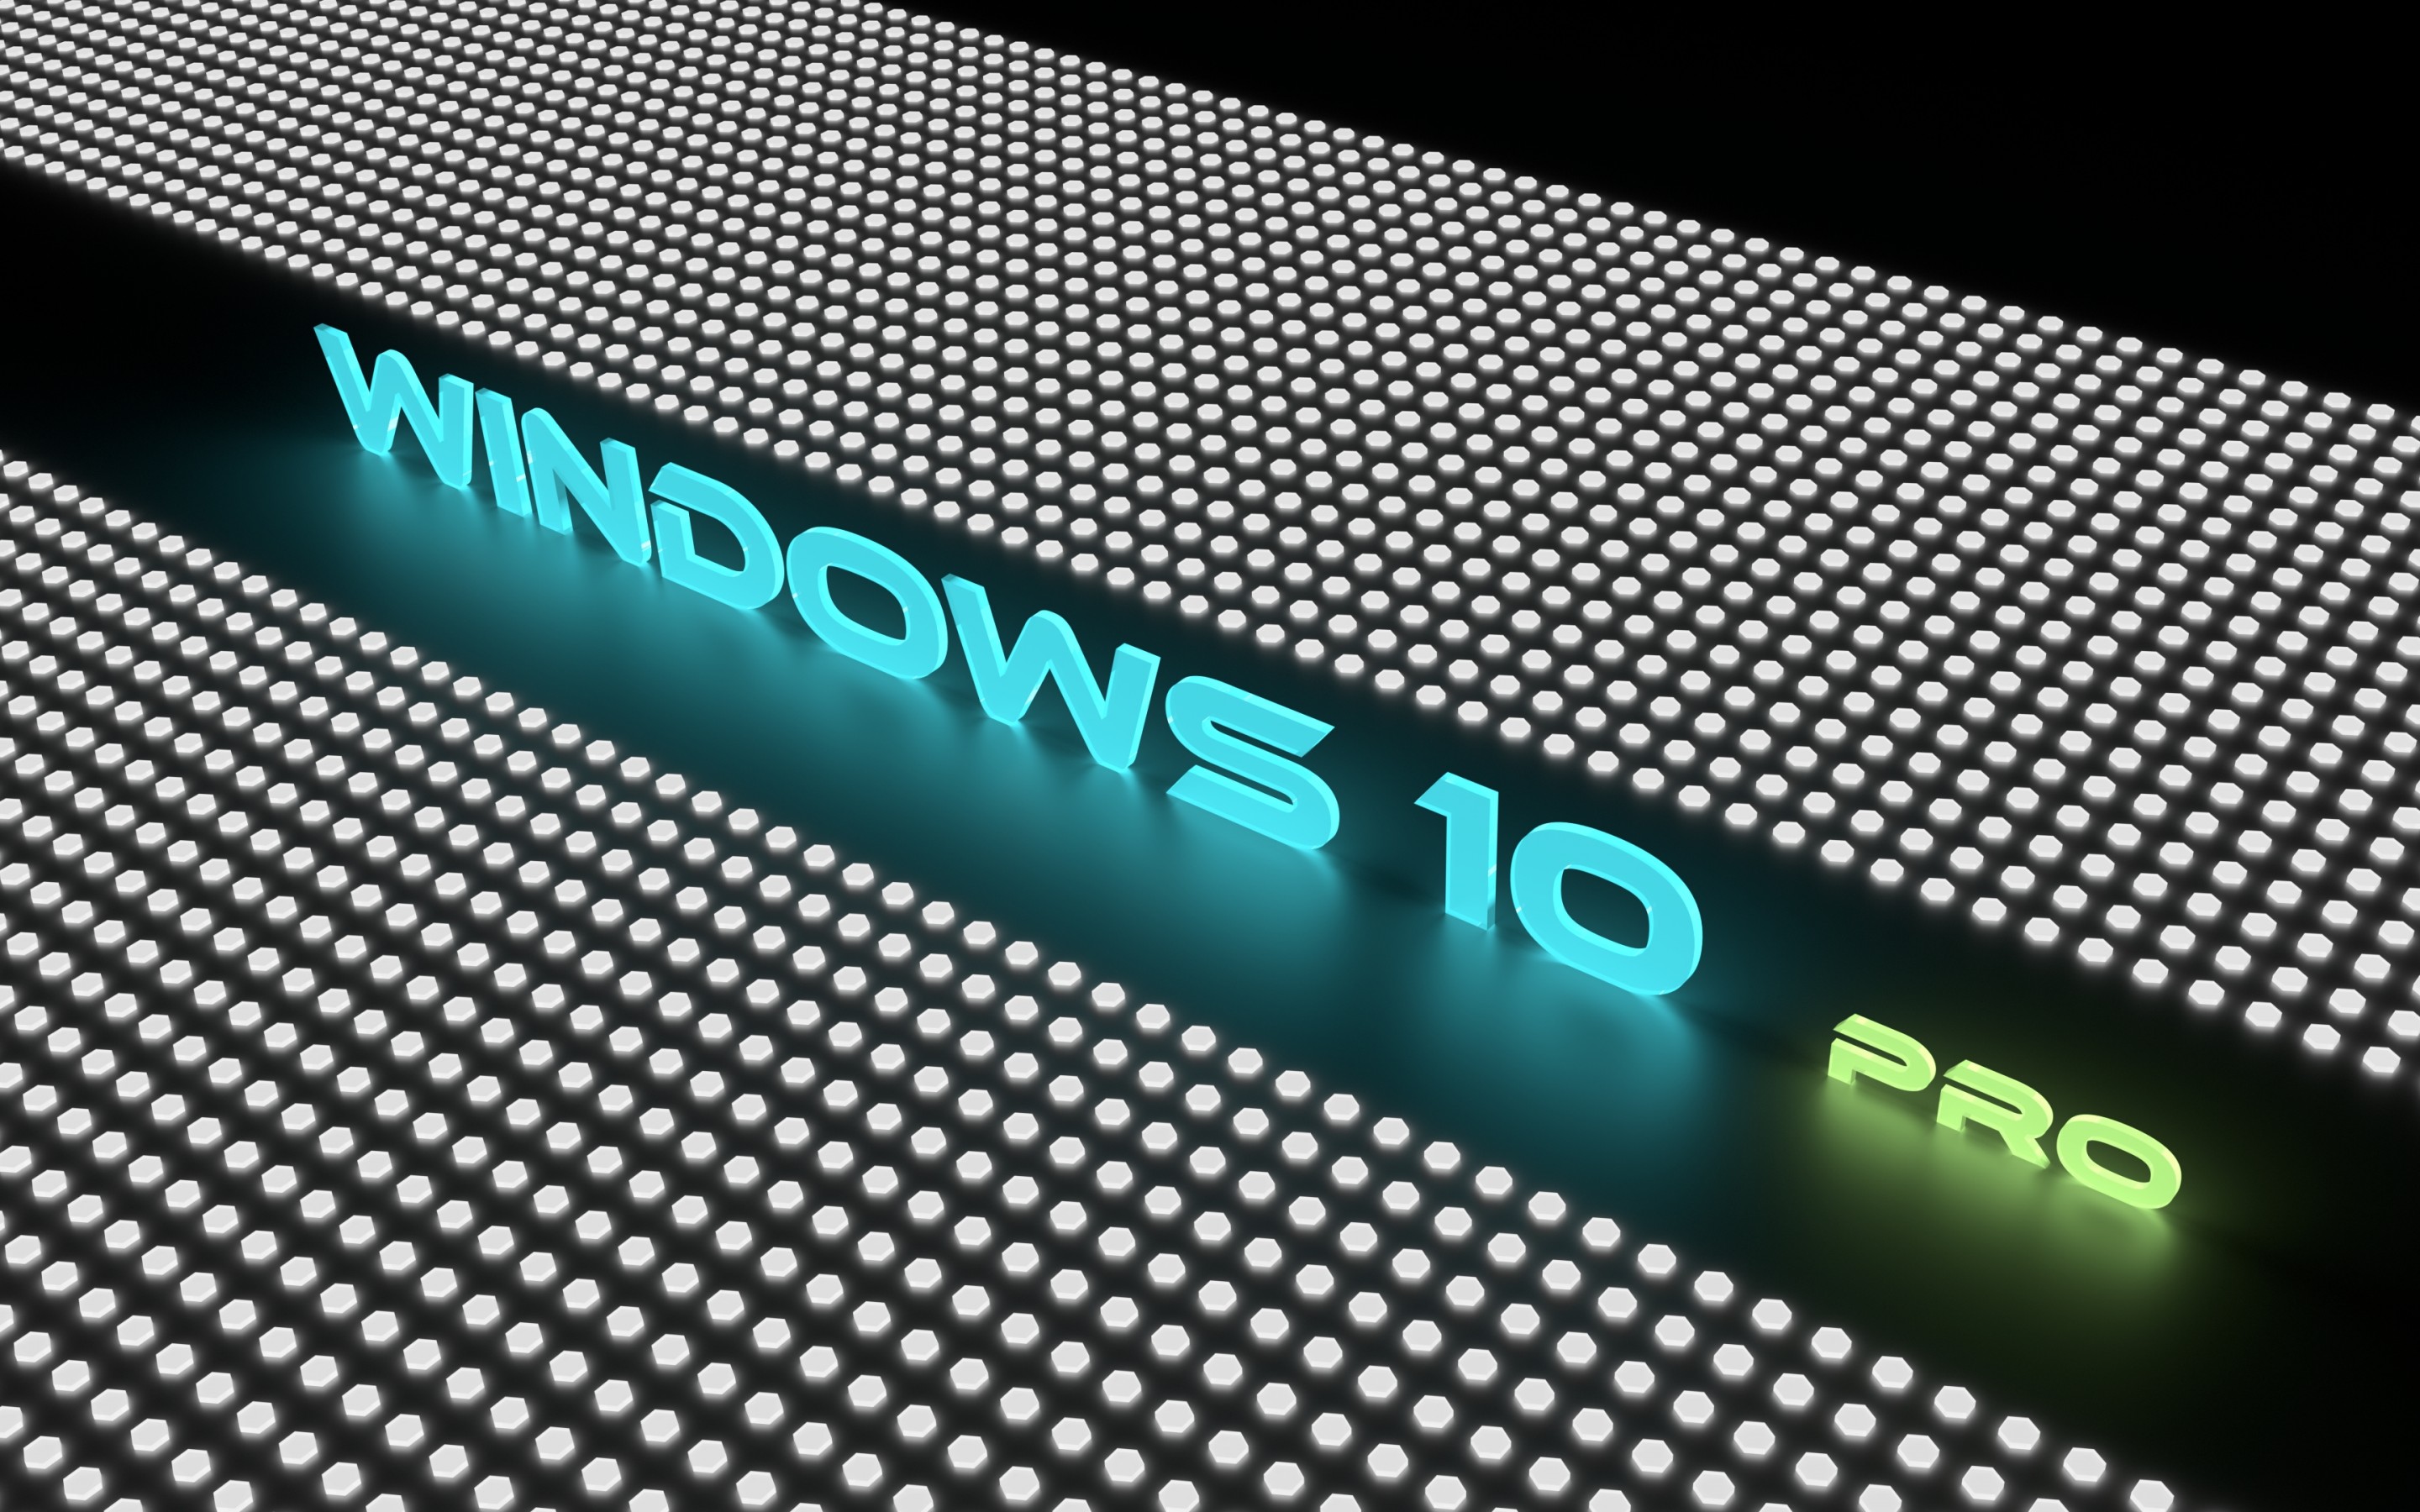 windows 10 fond d'écran hd,texte,police de caractère,dispositif d'affichage,la technologie,équipement audio